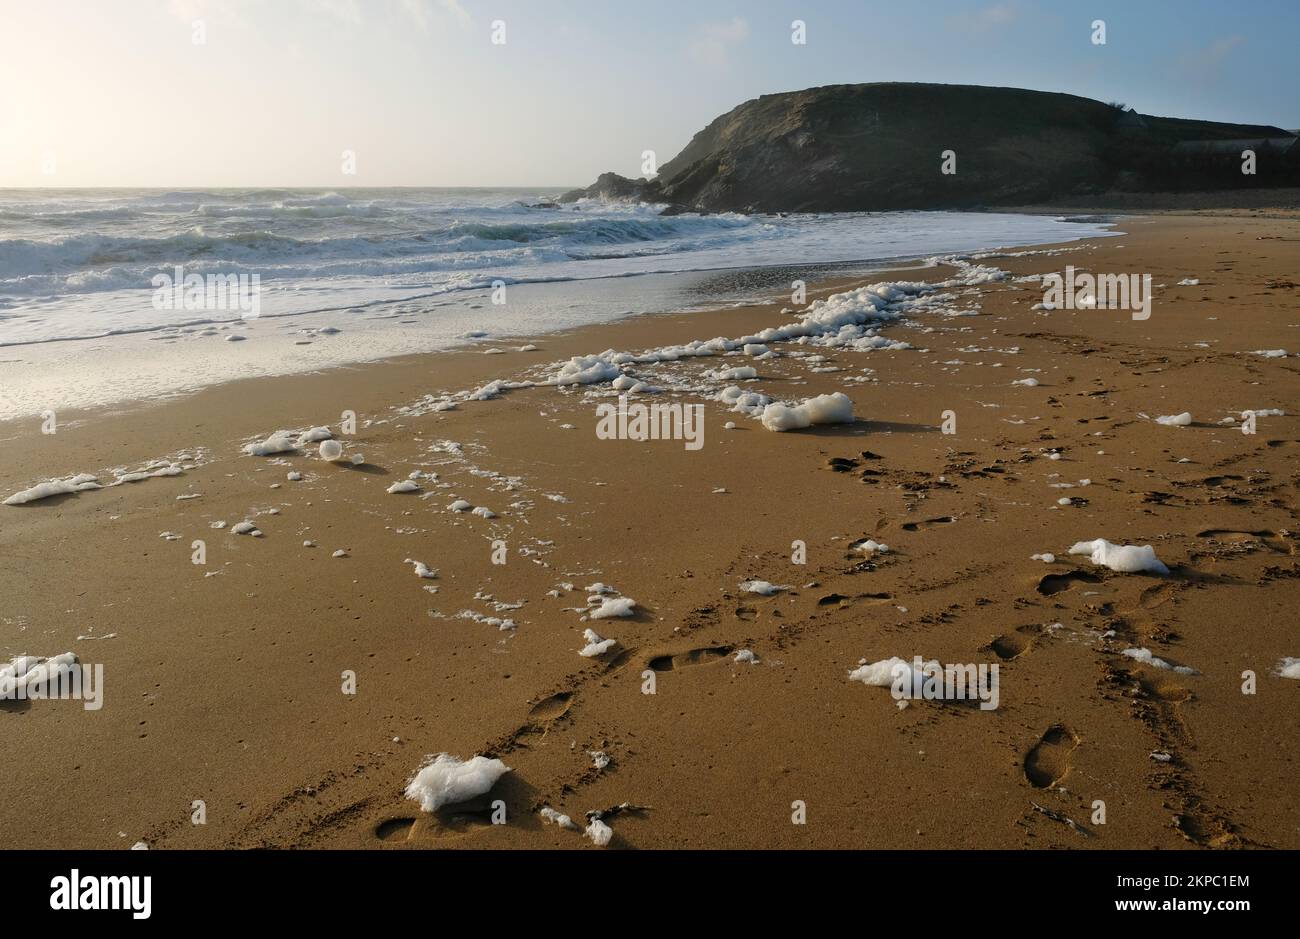 Spume o schiuma di mare che si forma dopo una tempesta, Gunwalloe, Cornwall, UK - John Gollop Foto Stock